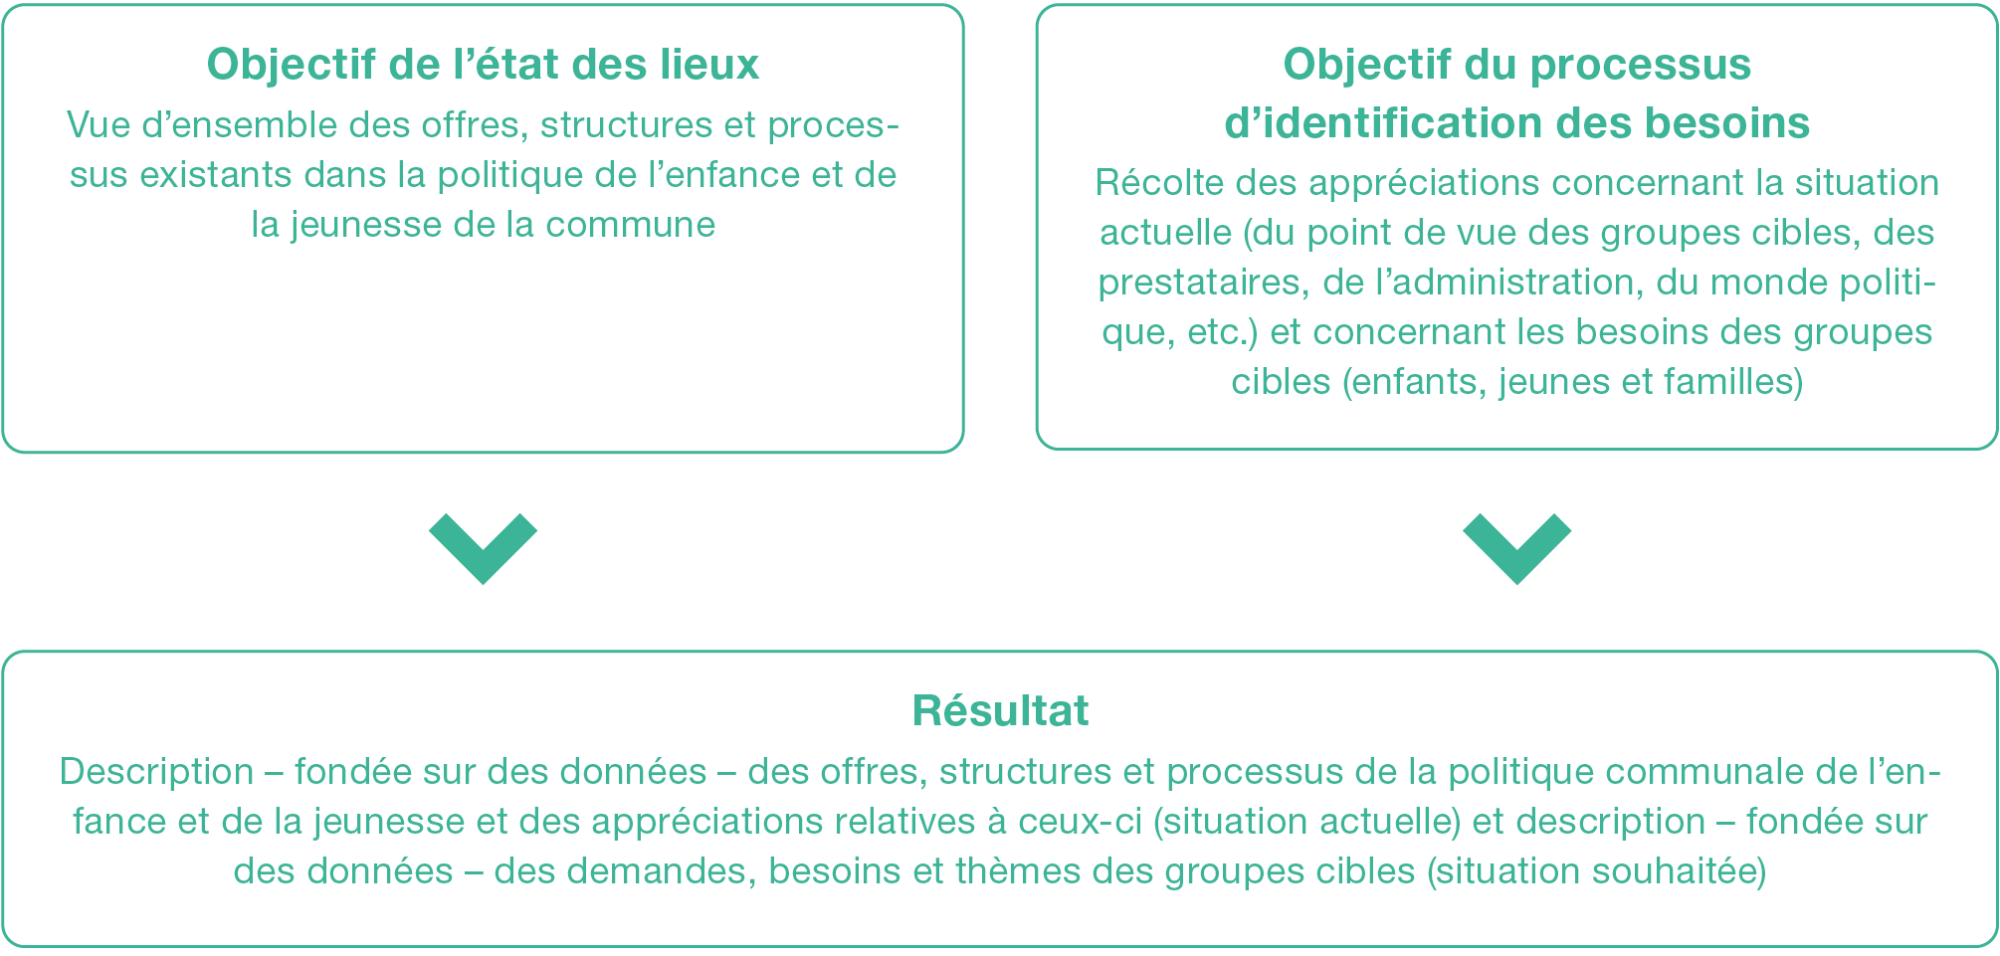 Figure 5 : Objectifs et résultat de l’état des lieux et du processus d’identification des besoins (propre présentation)